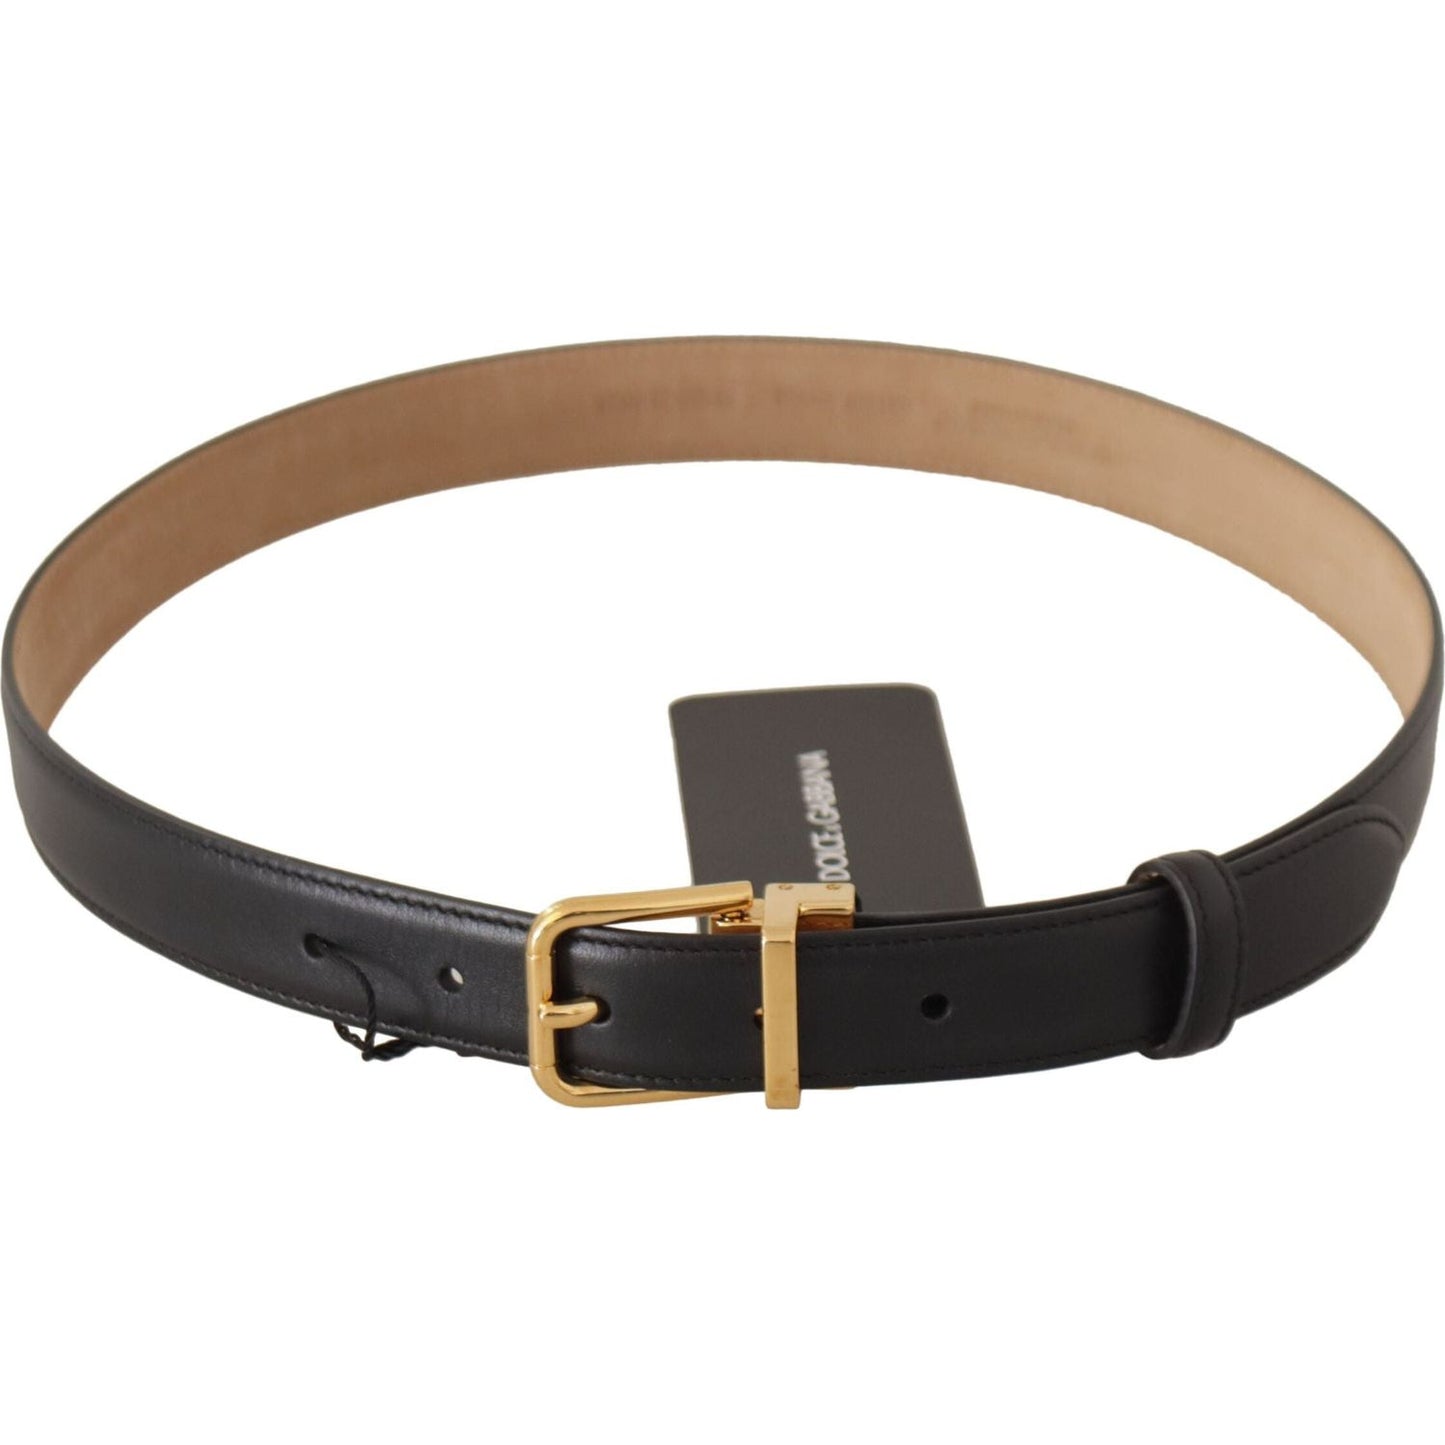 Dolce & Gabbana Elegant Black Leather Belt with Engraved Buckle black-calf-leather-gold-metal-logo-waist-buckle-belt-1